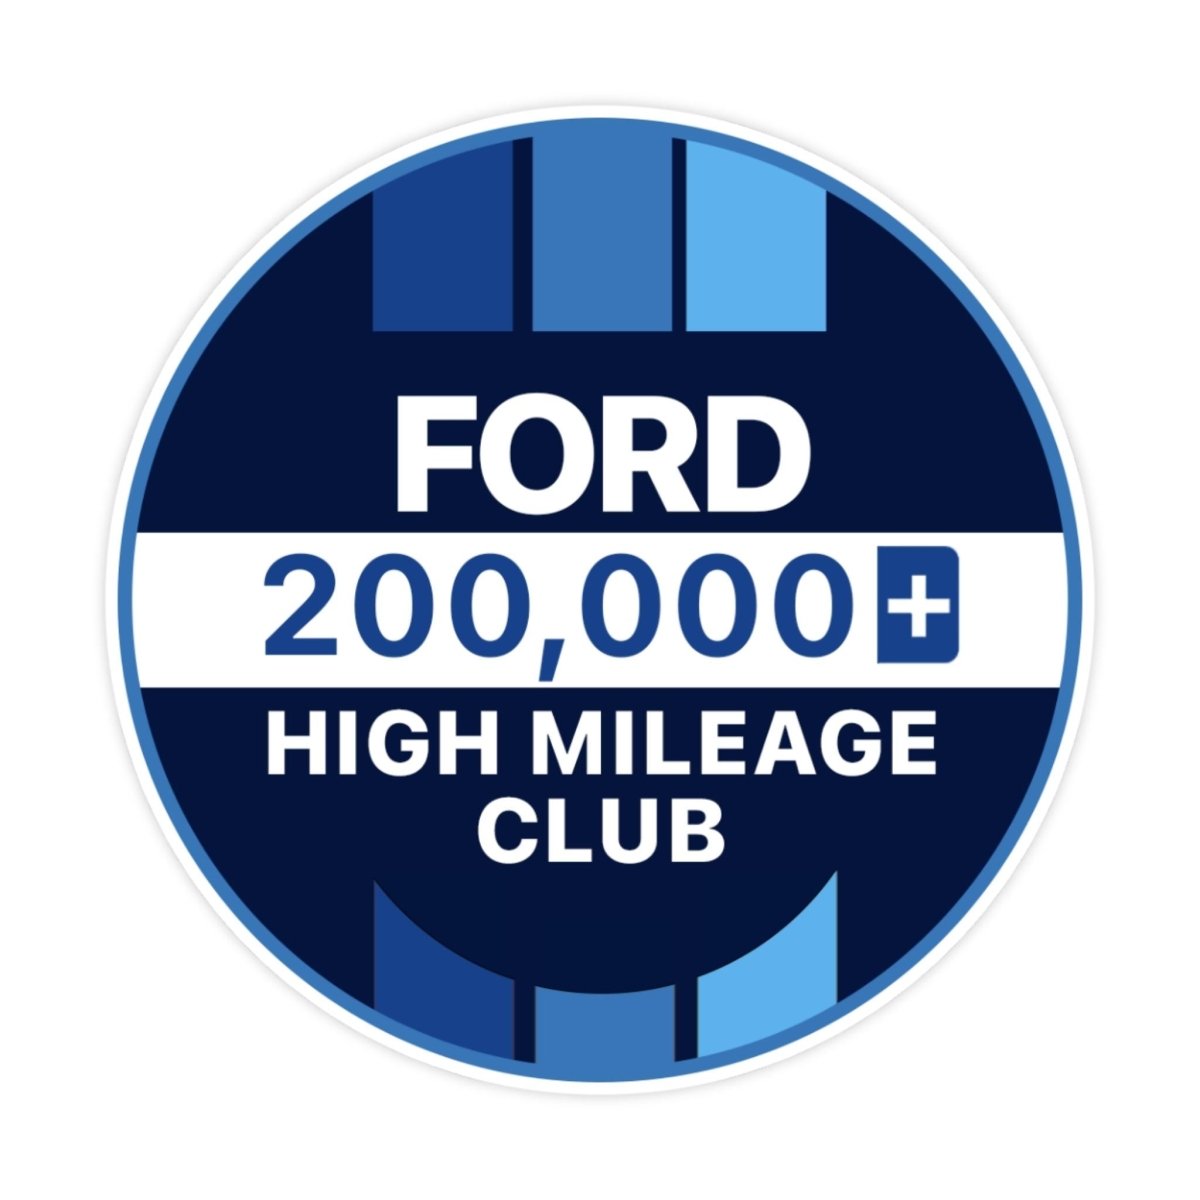 Ford 400k High Mileage Club Sticker - stickerbullFord 400k High Mileage Club StickerRetail StickerstickerbullstickerbullTaylor_Ford200k [#119]200kFord 400k High Mileage Club Sticker